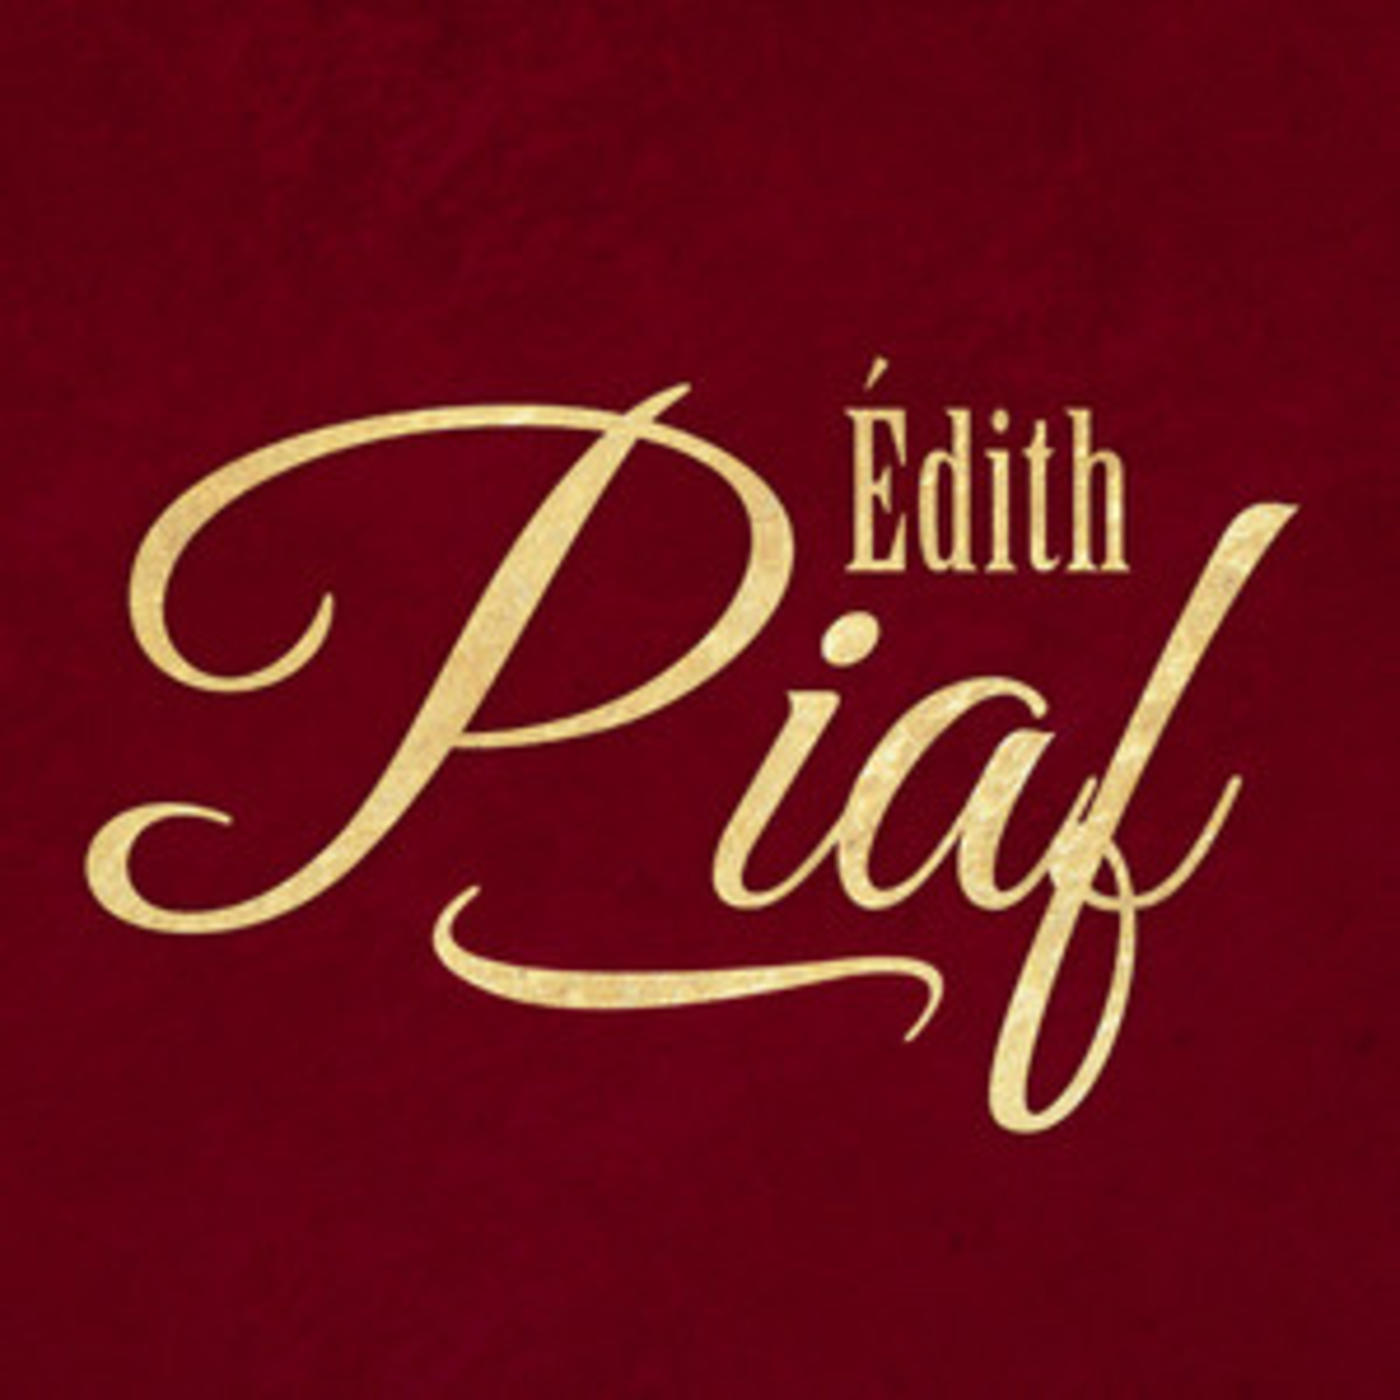 Official Edith Piaf playlist - Non, Je Ne Regrette Rien, La vie en rose, Milord, Paris, Padam Padam